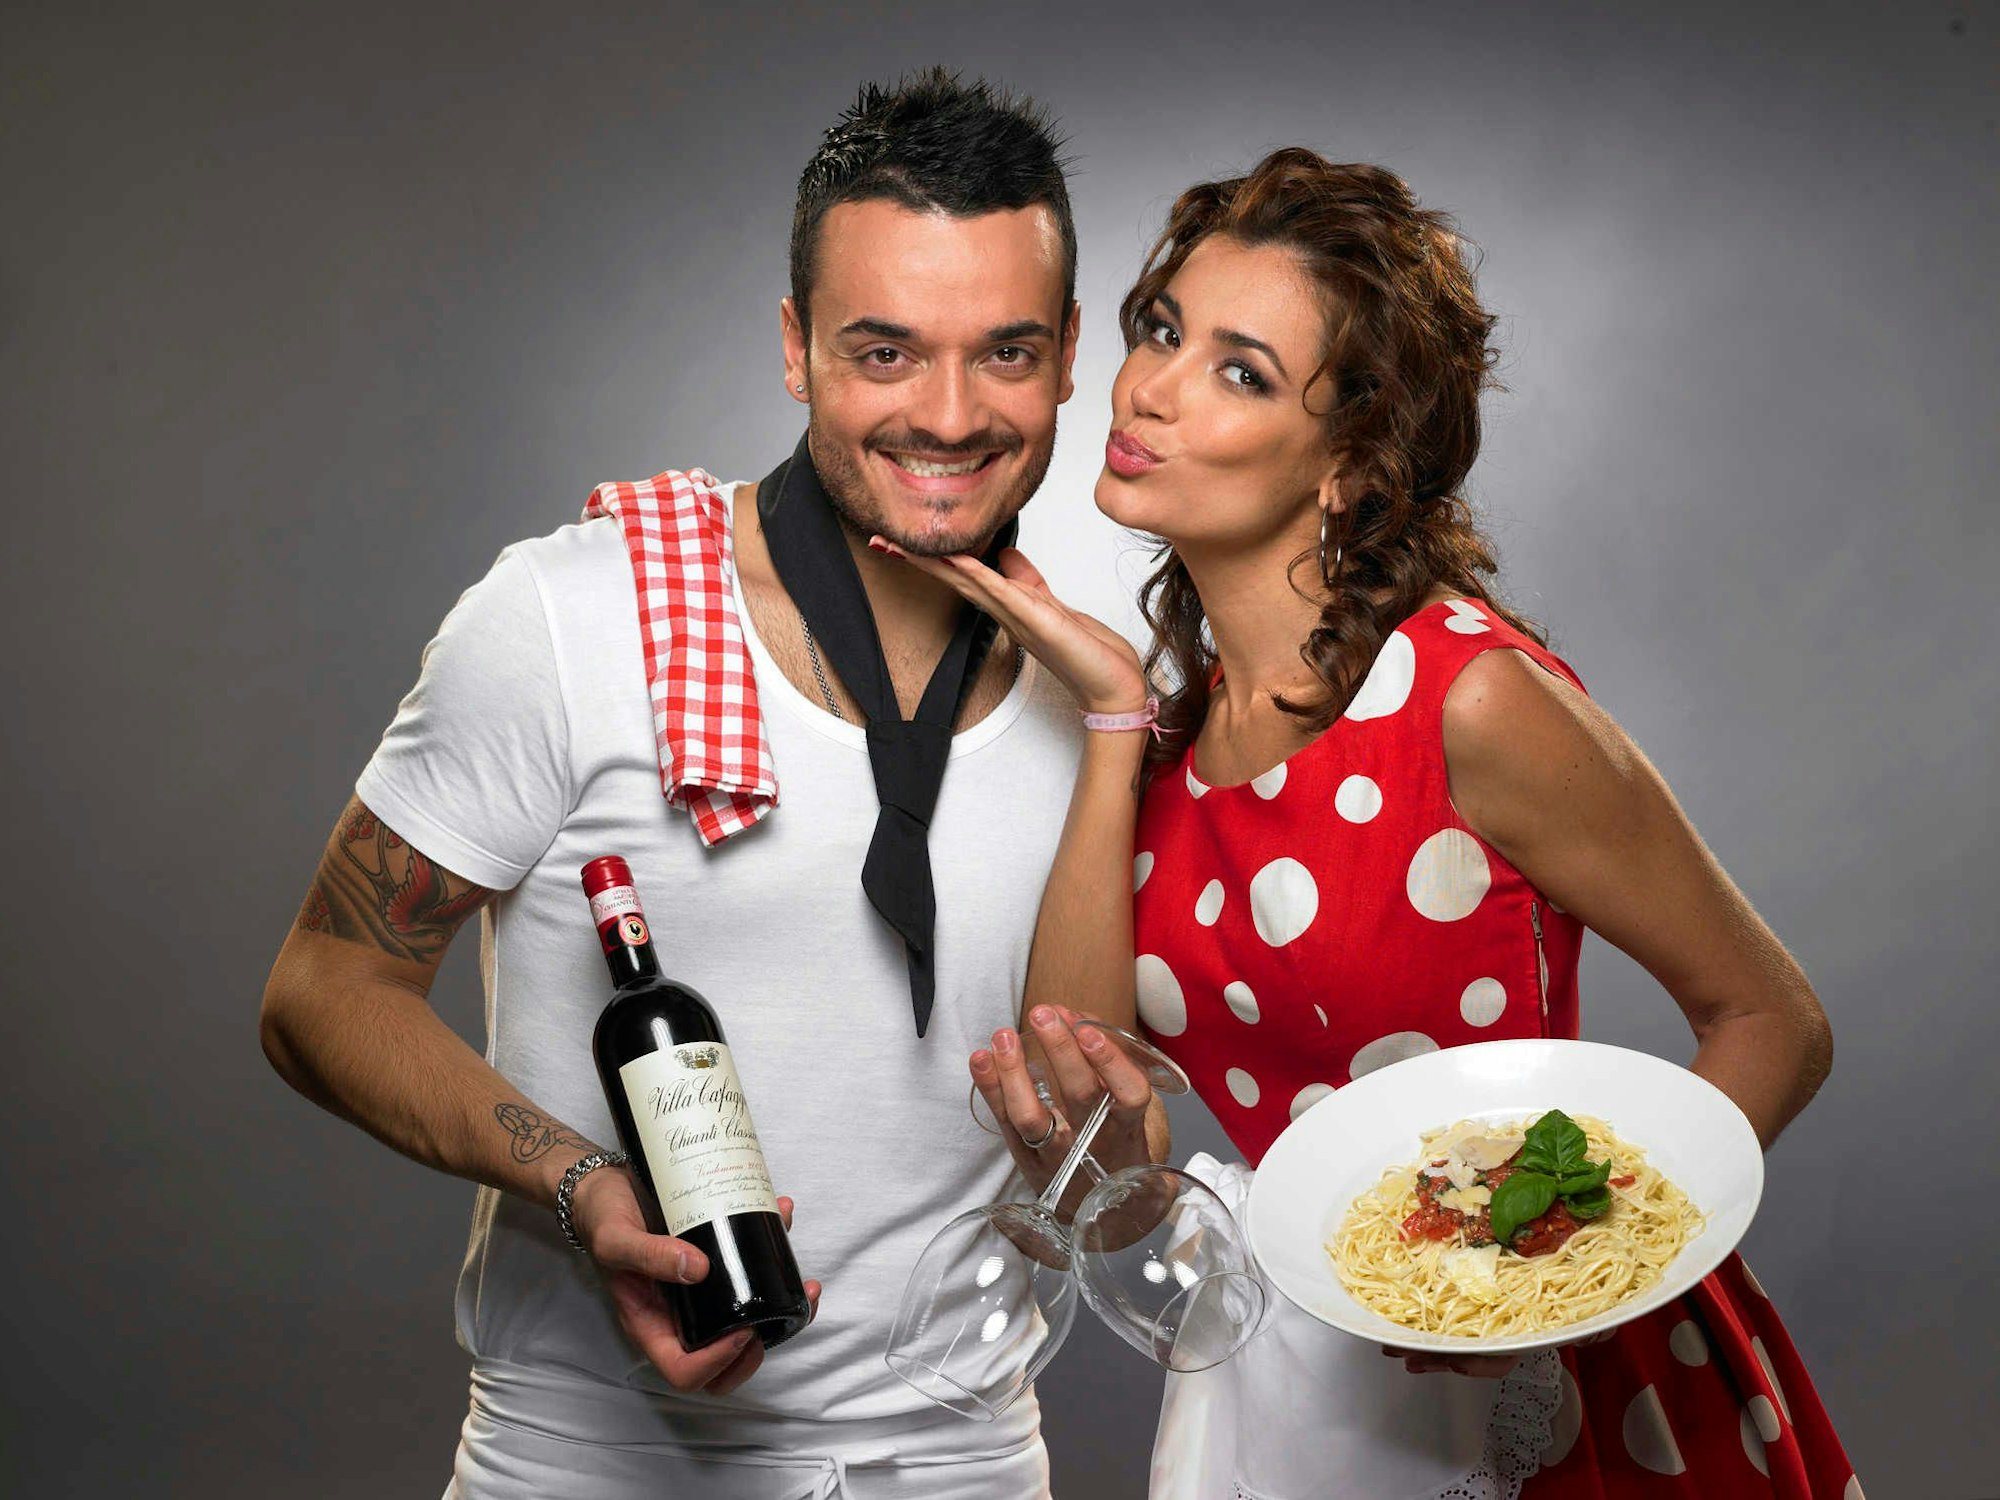 Jana Ina und ihr Ehemann Giovanni starten am Donnerstag (14.01.2010) bei ProSieben mit ihrer siebenteiligen Soap ""Pizza, Pasta & Amore". Das Paar eröffnet sein eigenes Restaurant.